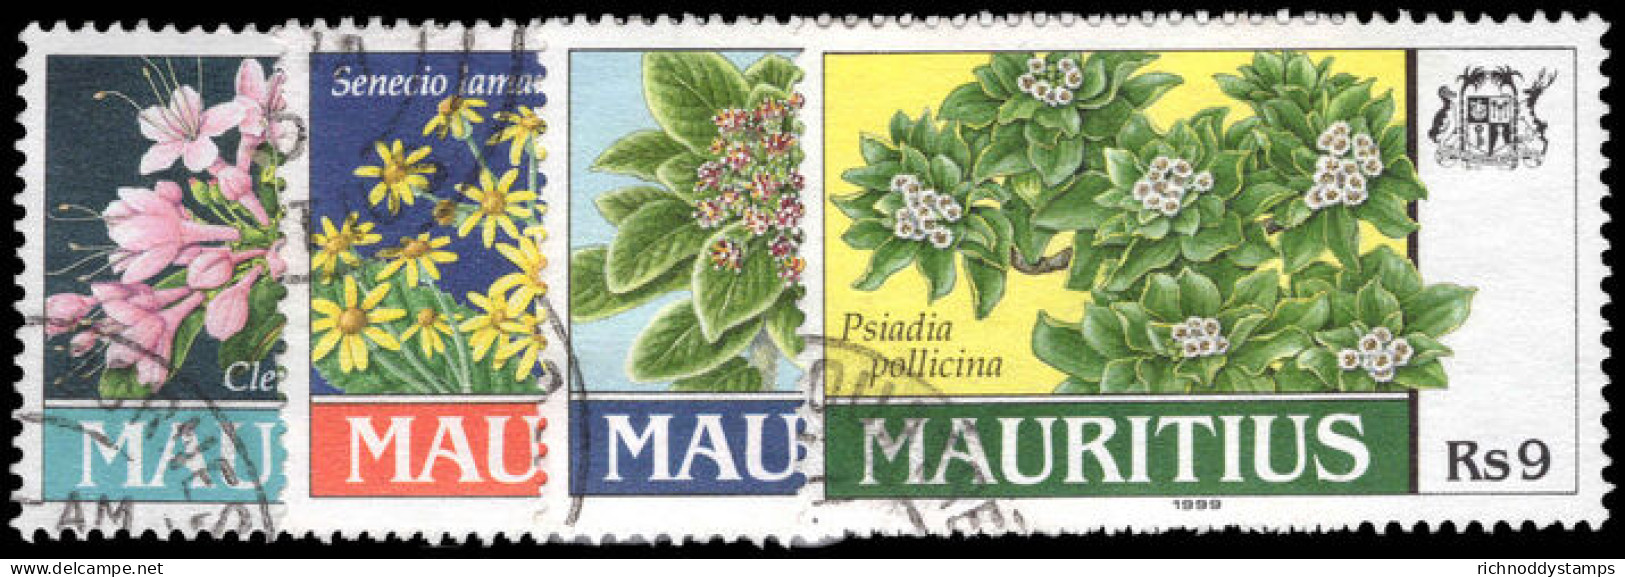 Mauritius 1999 Local Plants Fine Used. - Mauritius (1968-...)